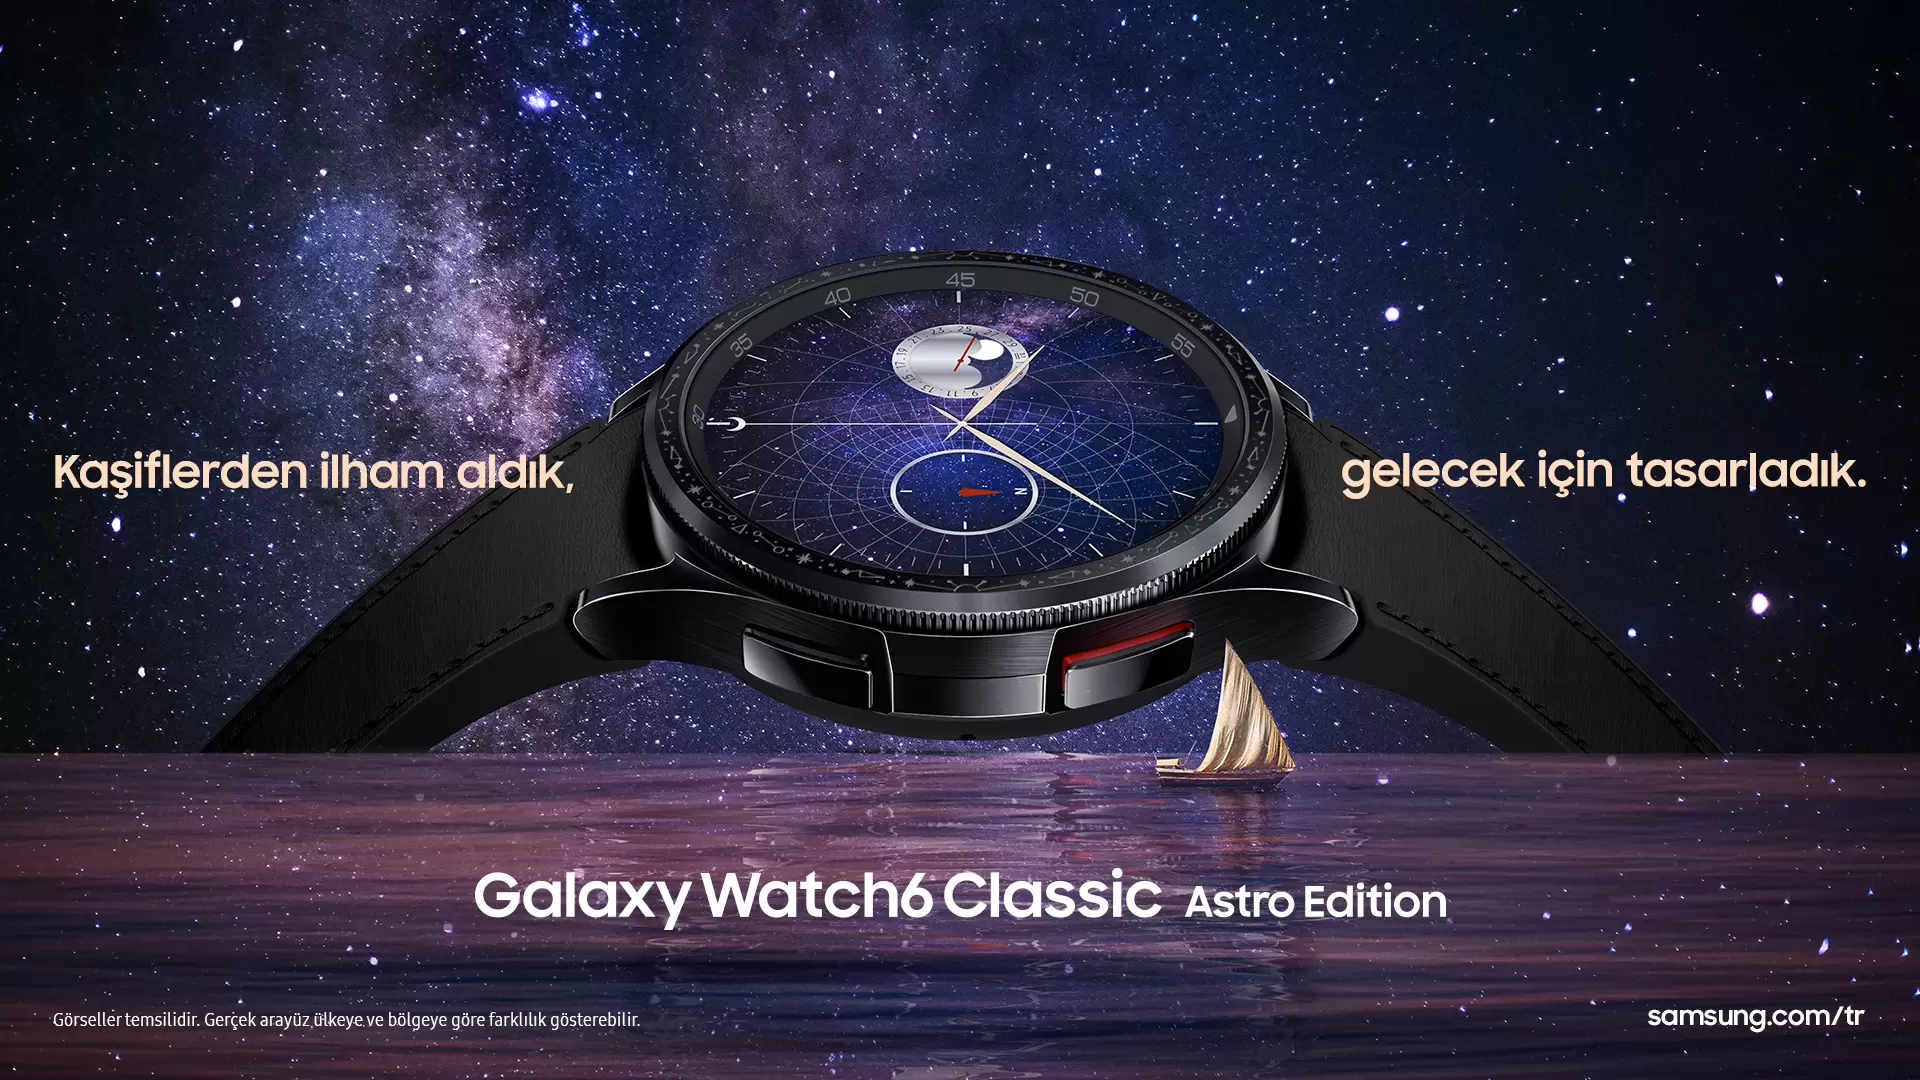 Samsung, Galaxy Watch6 Classic Astro Edition’ı Tanıttı